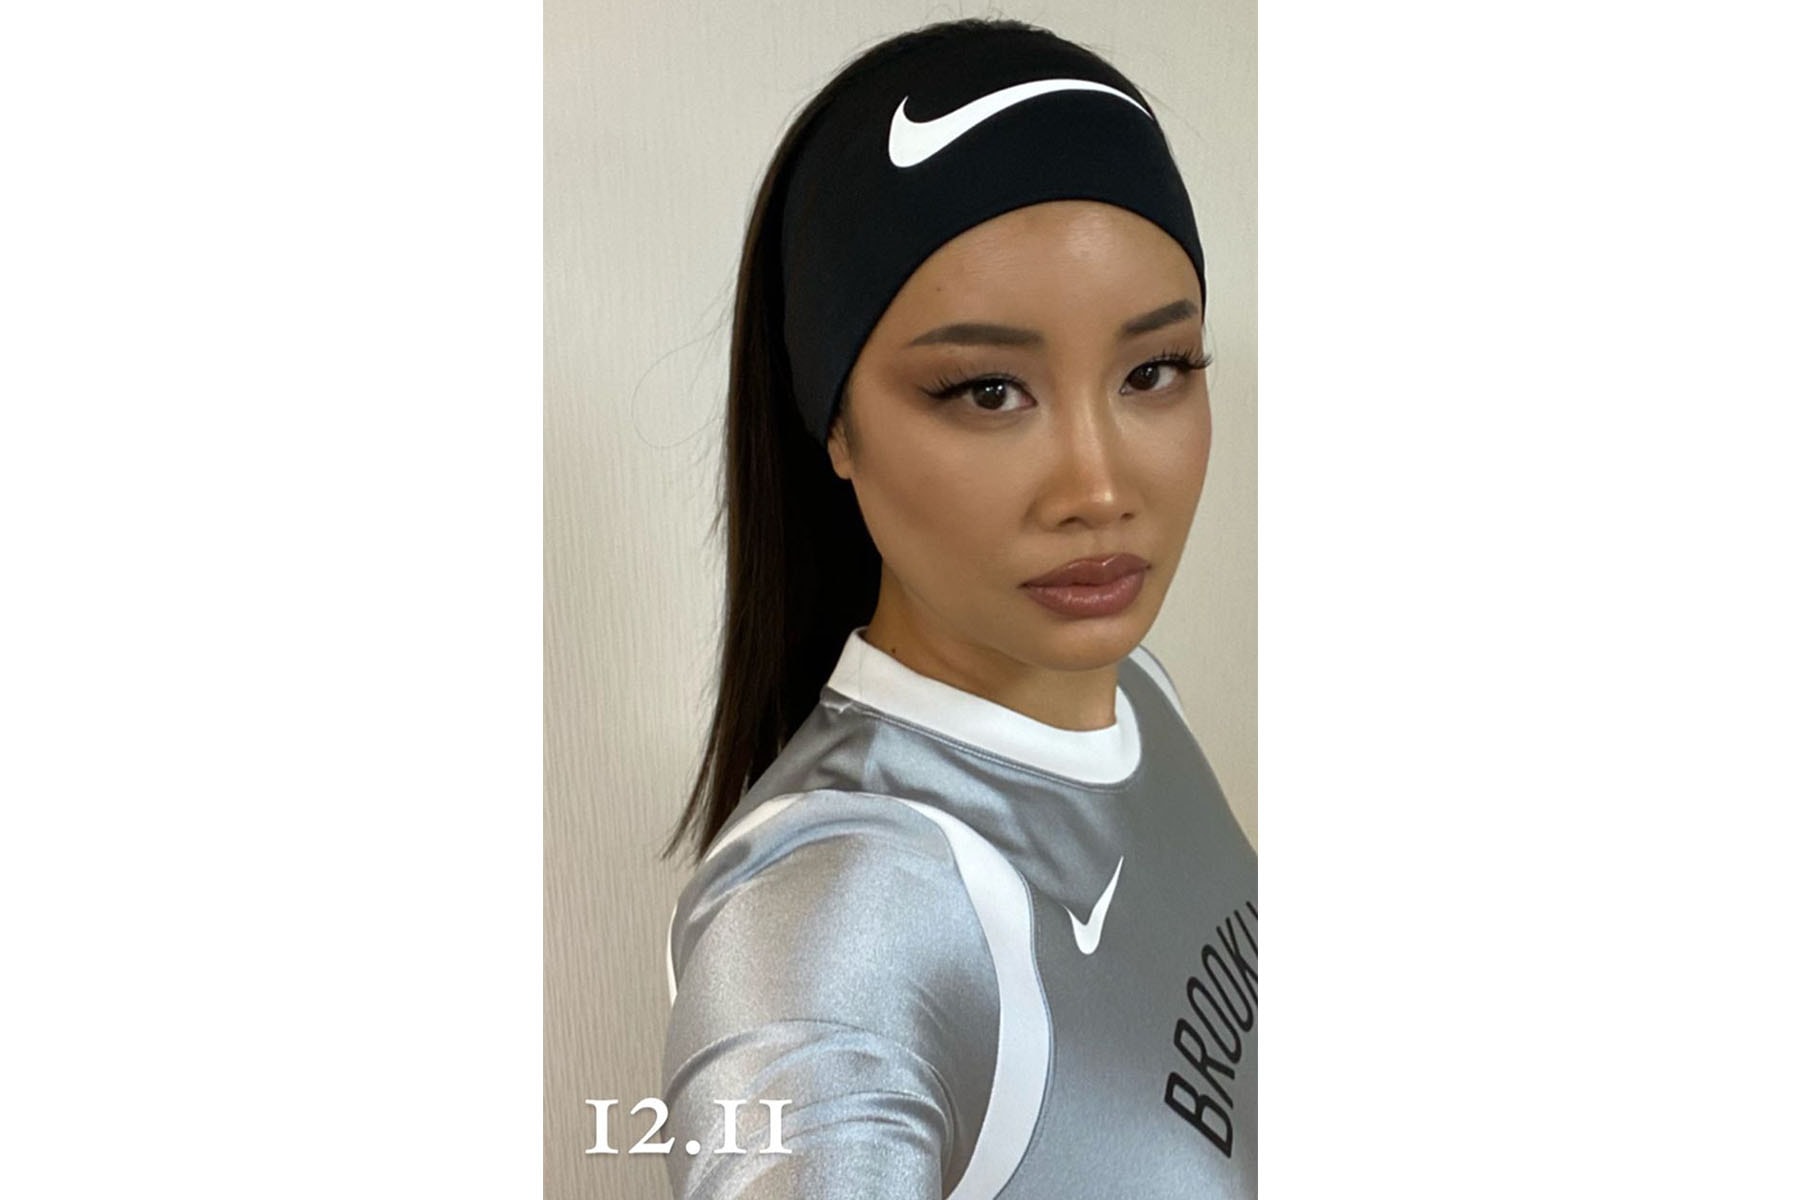 Yoon Ahn 親自揭示 AMBUSH x Nike x NBA 全新三方聯乘企劃